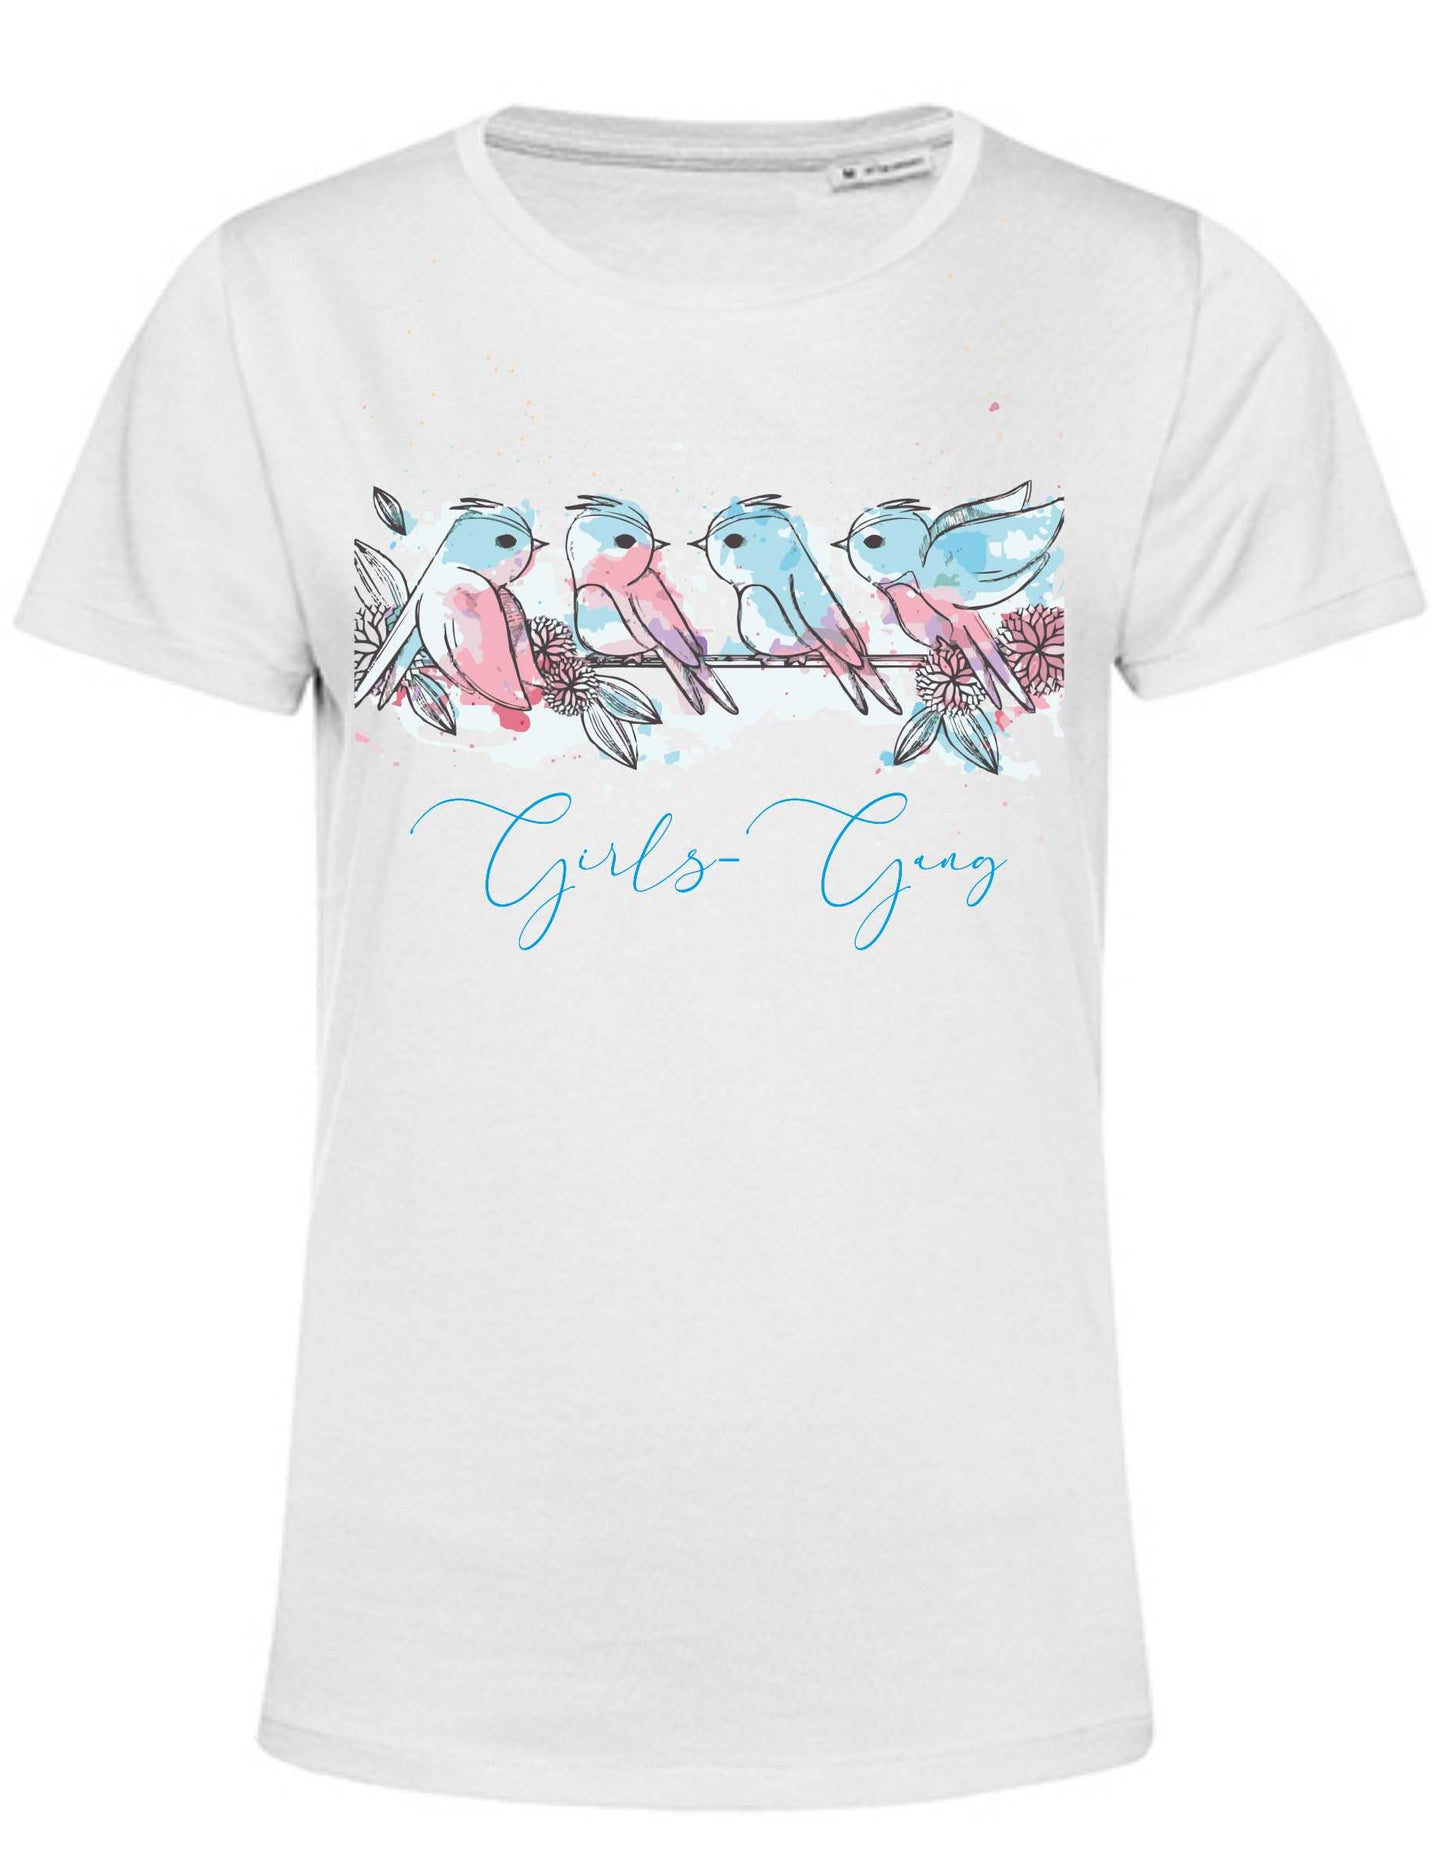 Shirt Girls-Gang mit Vögelchen